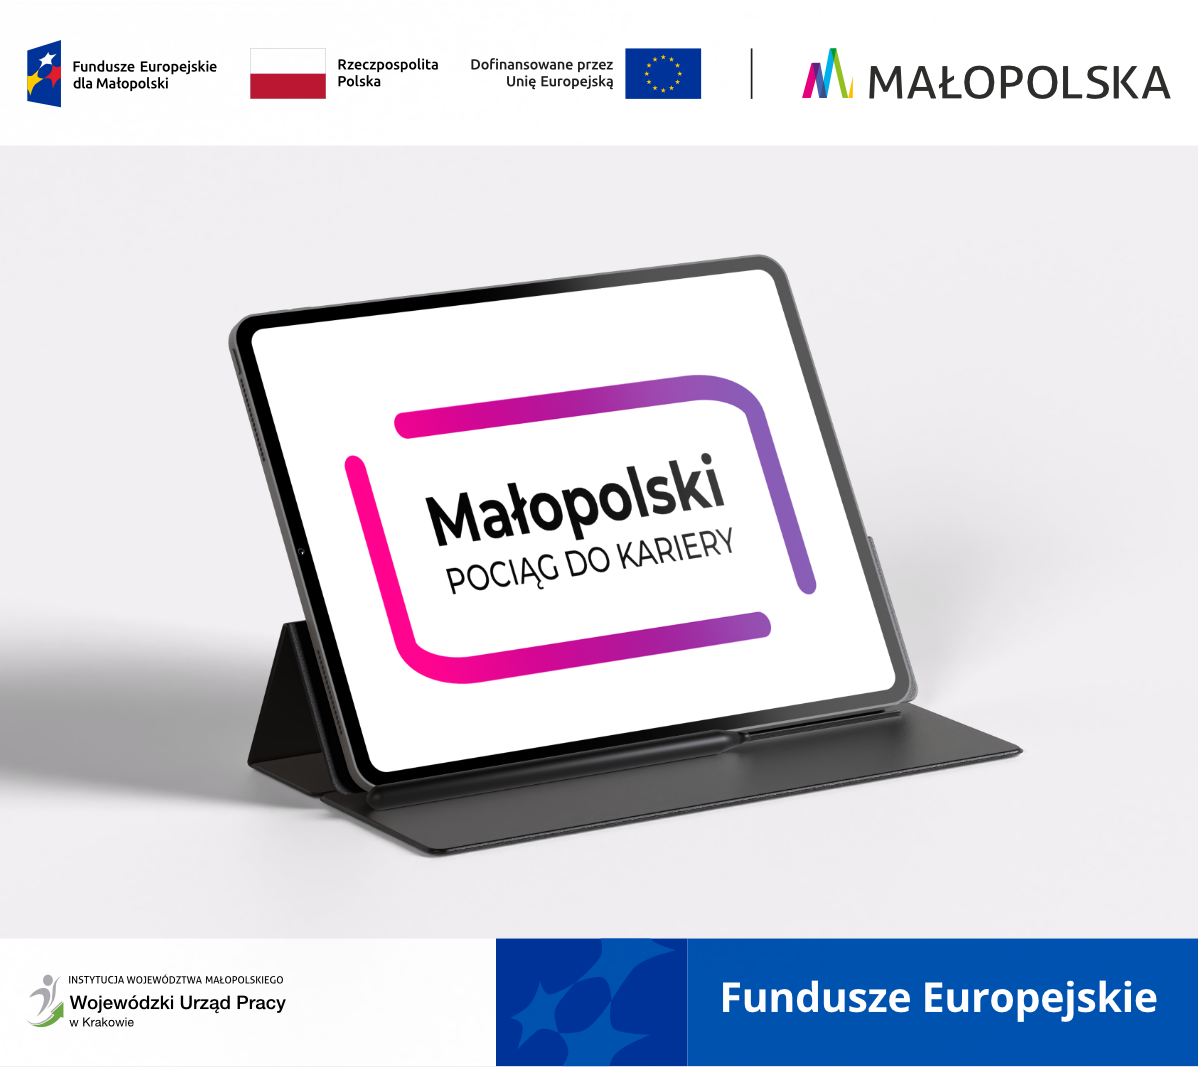  Znak graficzny z nazwą projektu Małopolski Pociąg do Kariery wyświetlający się na ekranie stojącego tabletu, poniżej informacja o dofinansowaniu projektu z Funduszy Europejskich. 